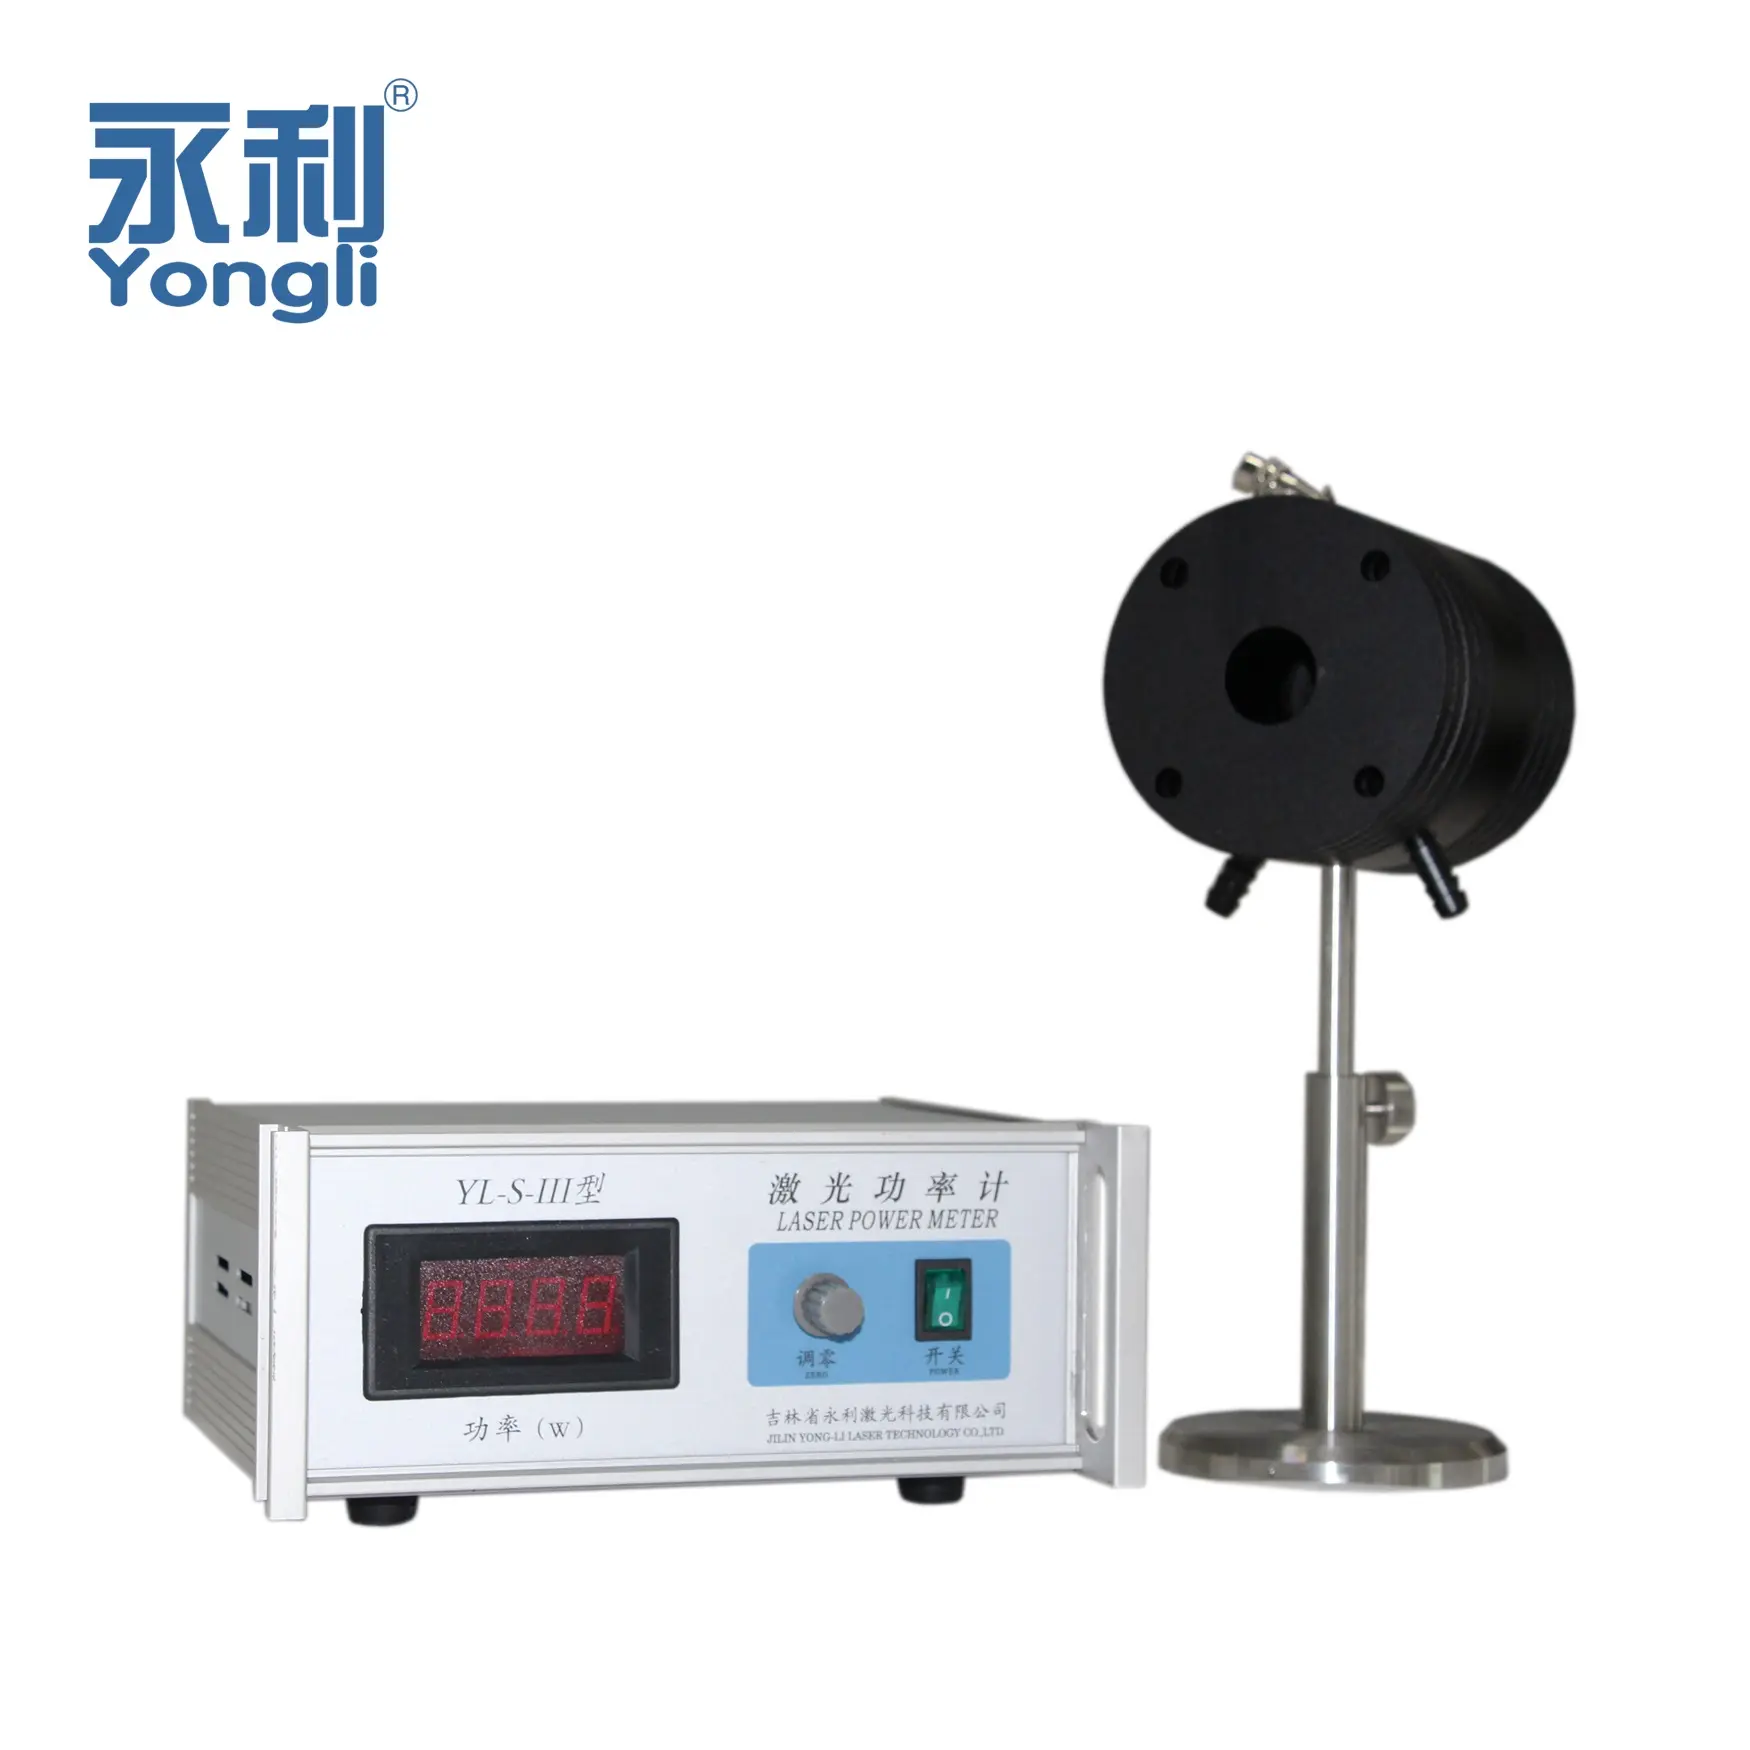 Yongli YL-S-III 0-200W CO2 Laser Power Meter